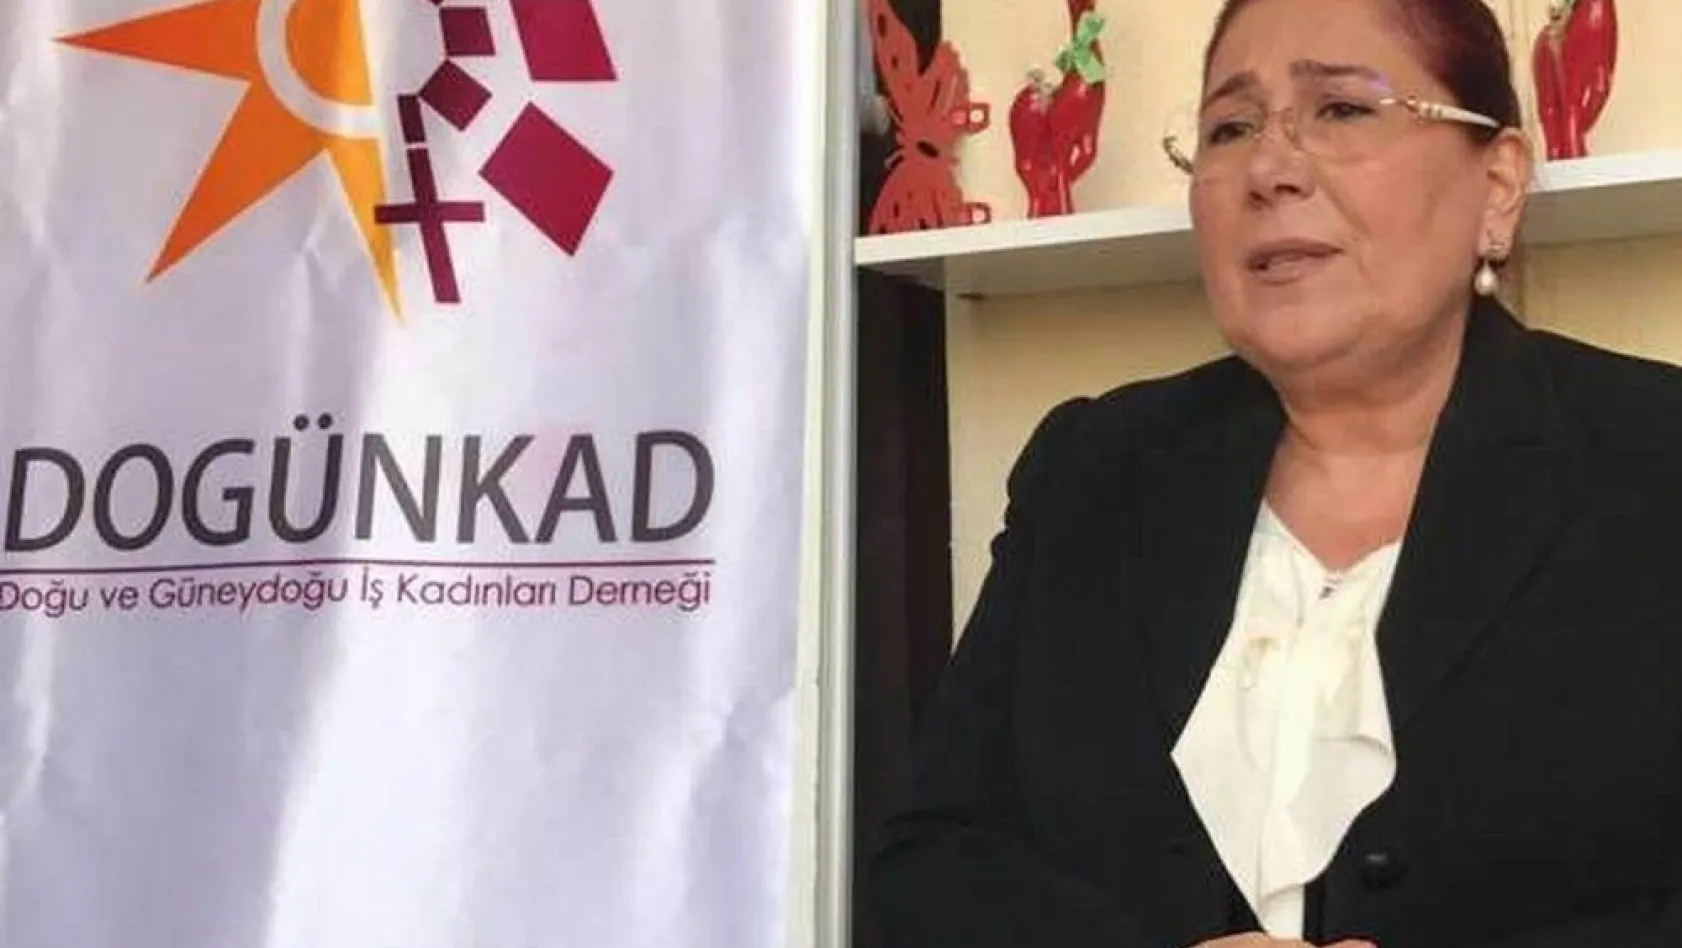 DOGÜNKAD'da başkanlığa Ferda Cemiloğlu seçildi
